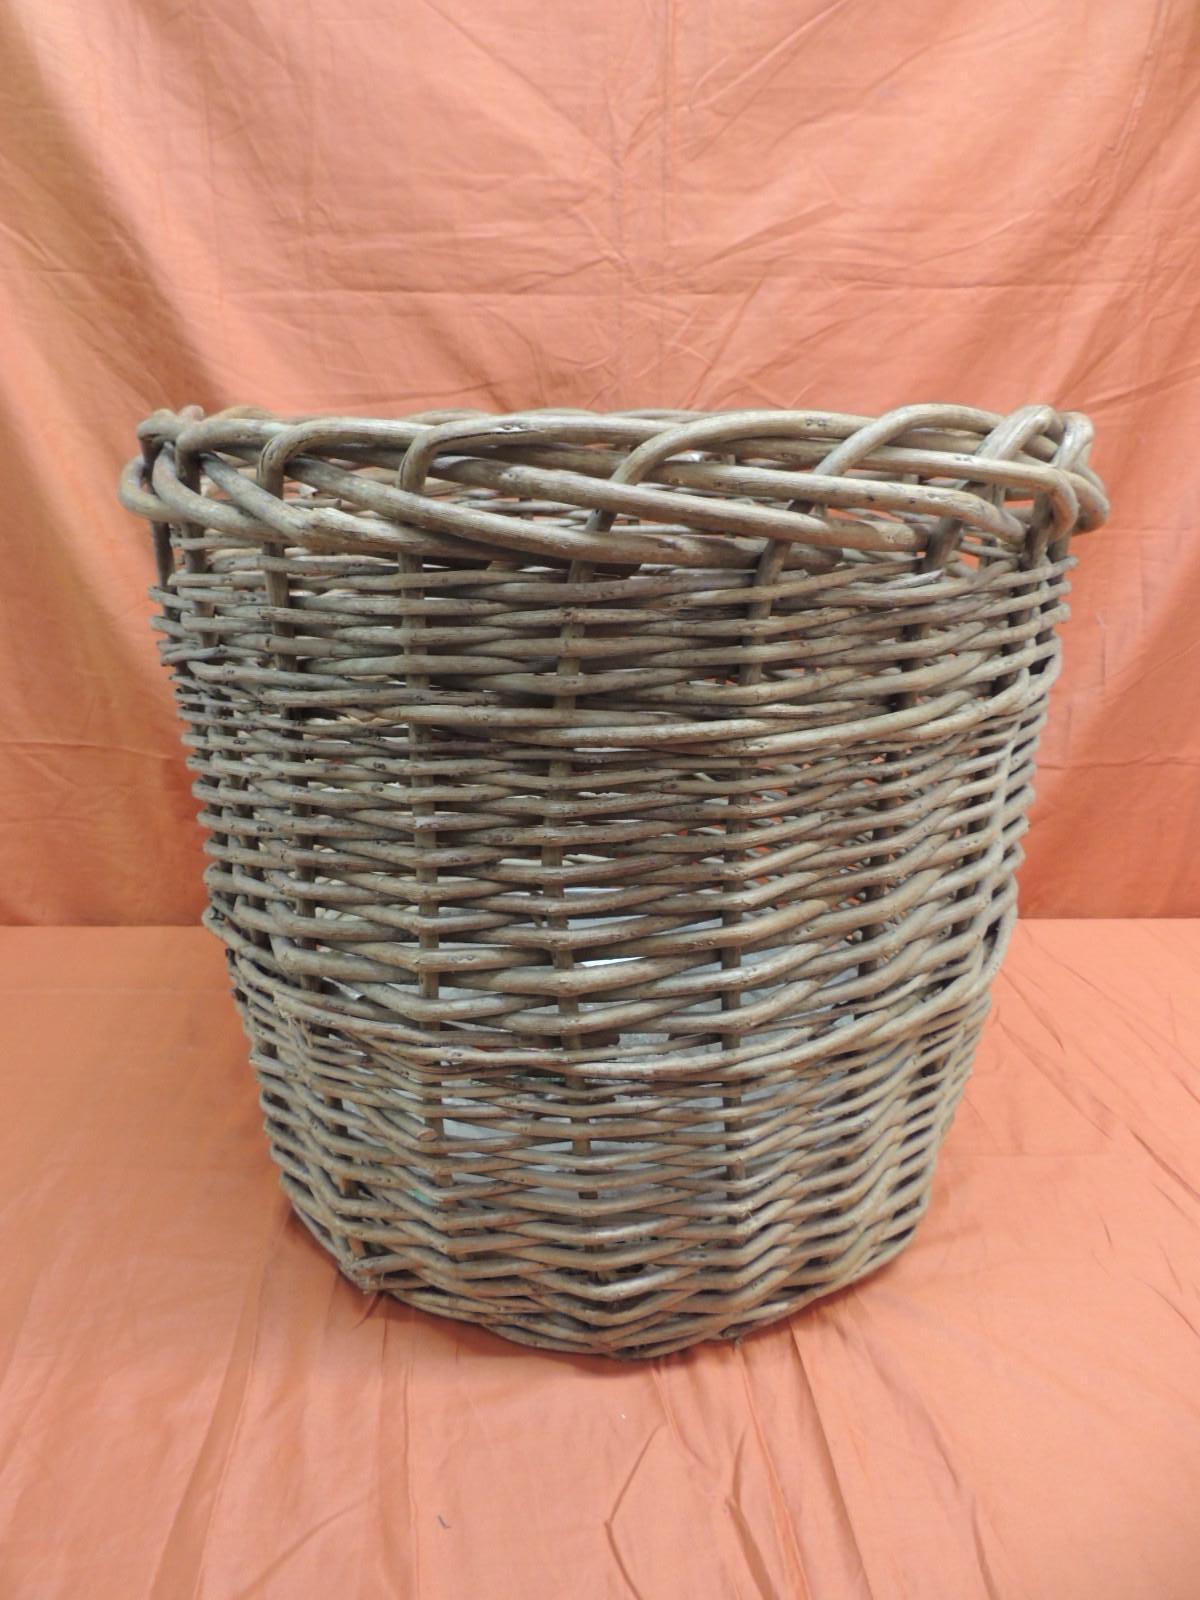 Asian Vintage Monumental Round Willow Planter/Basket